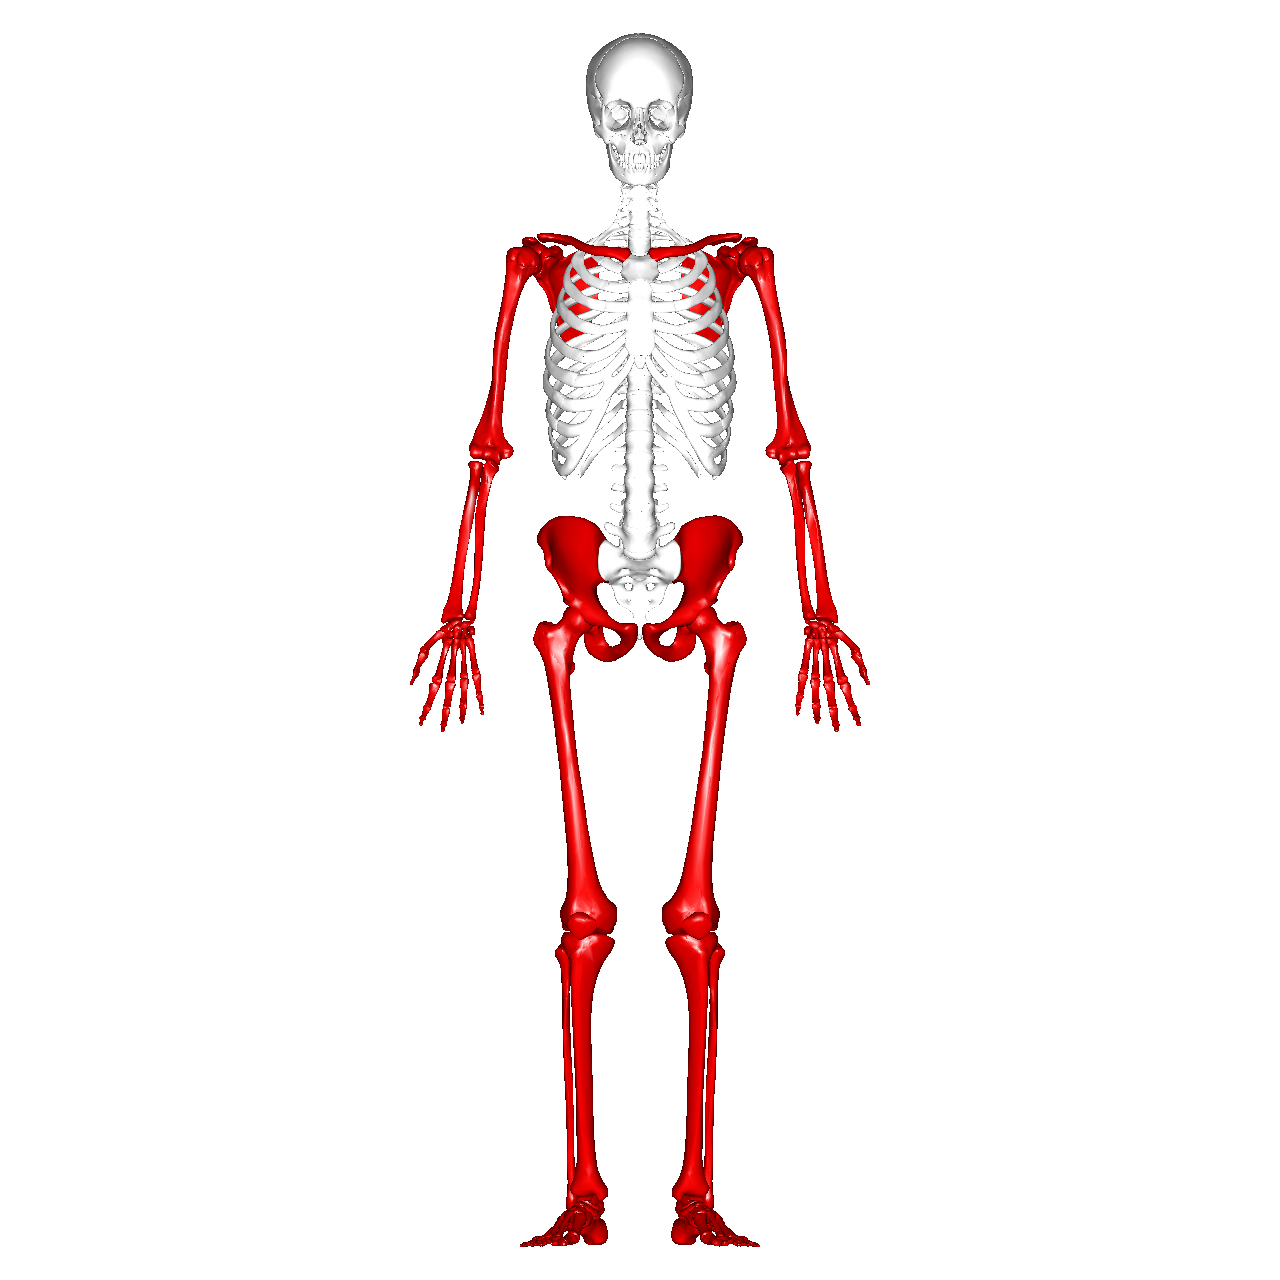 Esqueleto apendicular Ossos dos membros superiores e